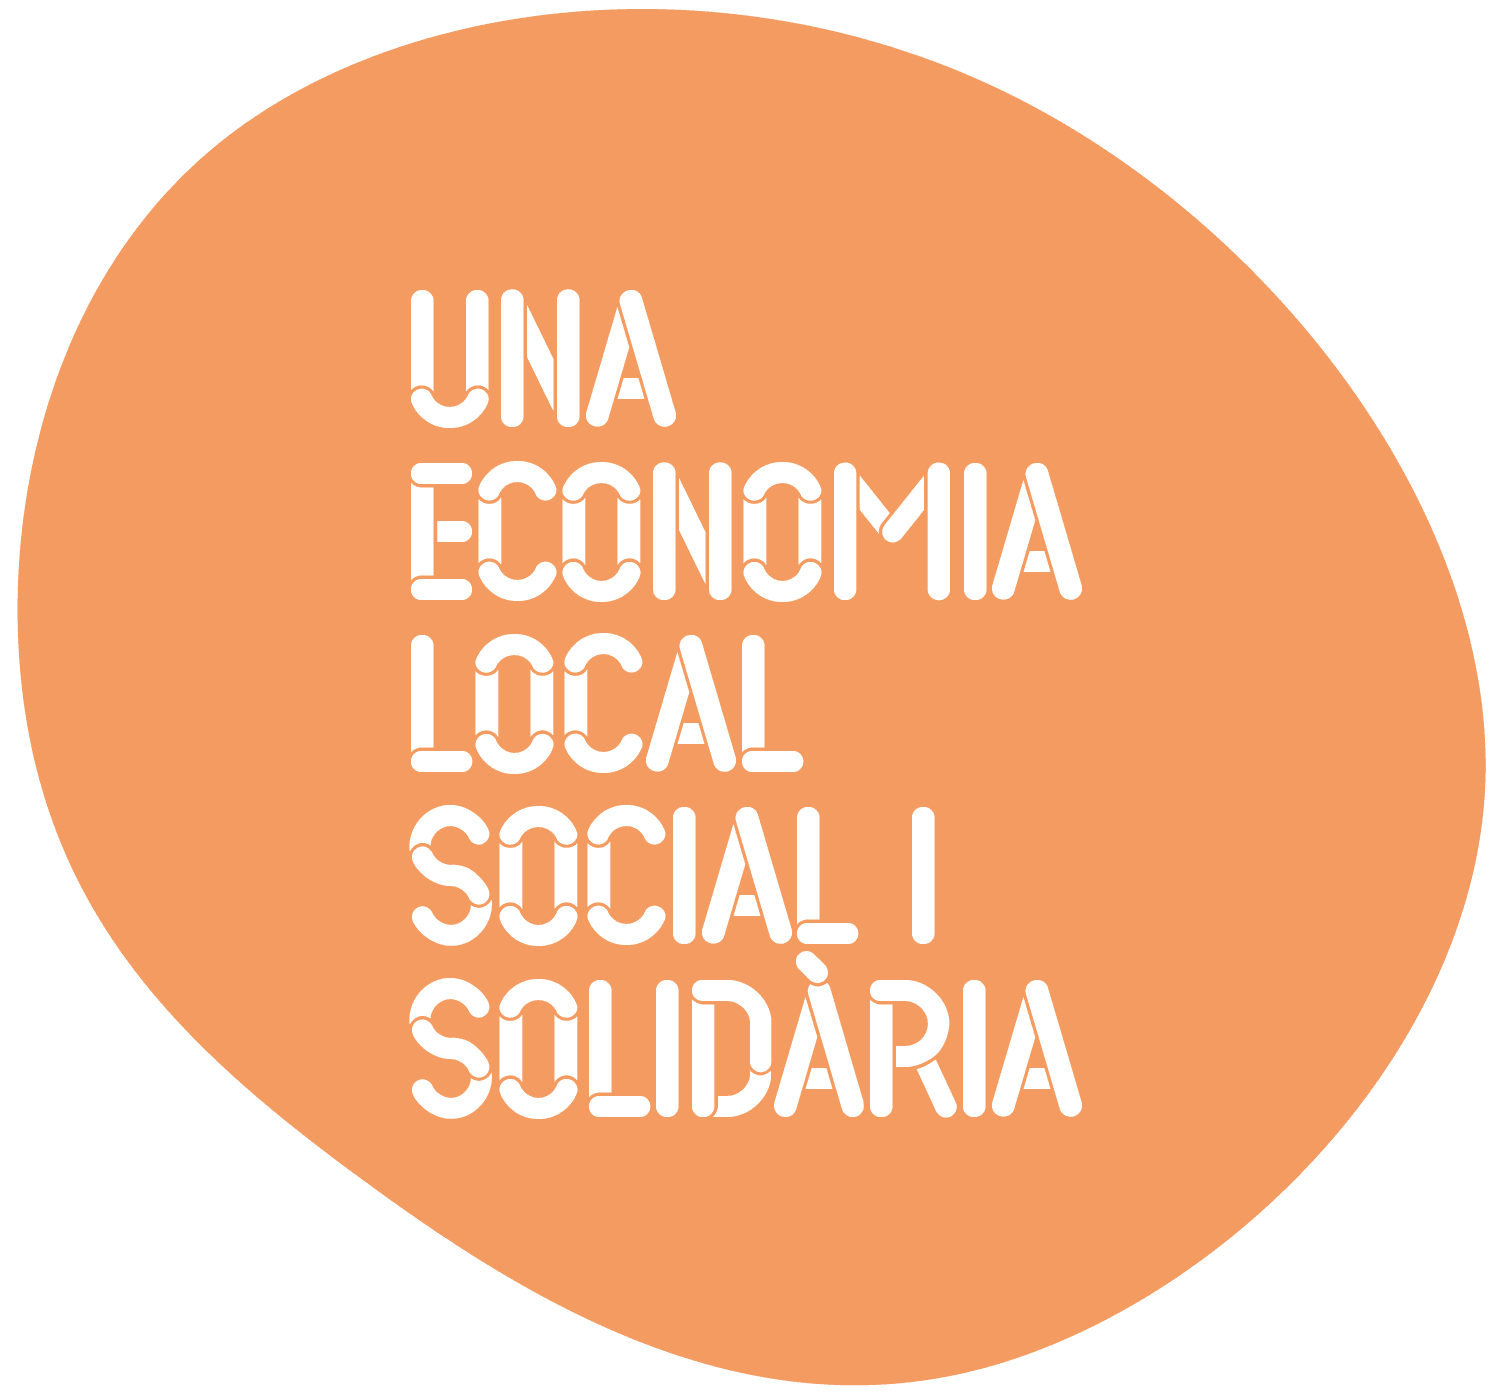 Una Economia local social i solidaria